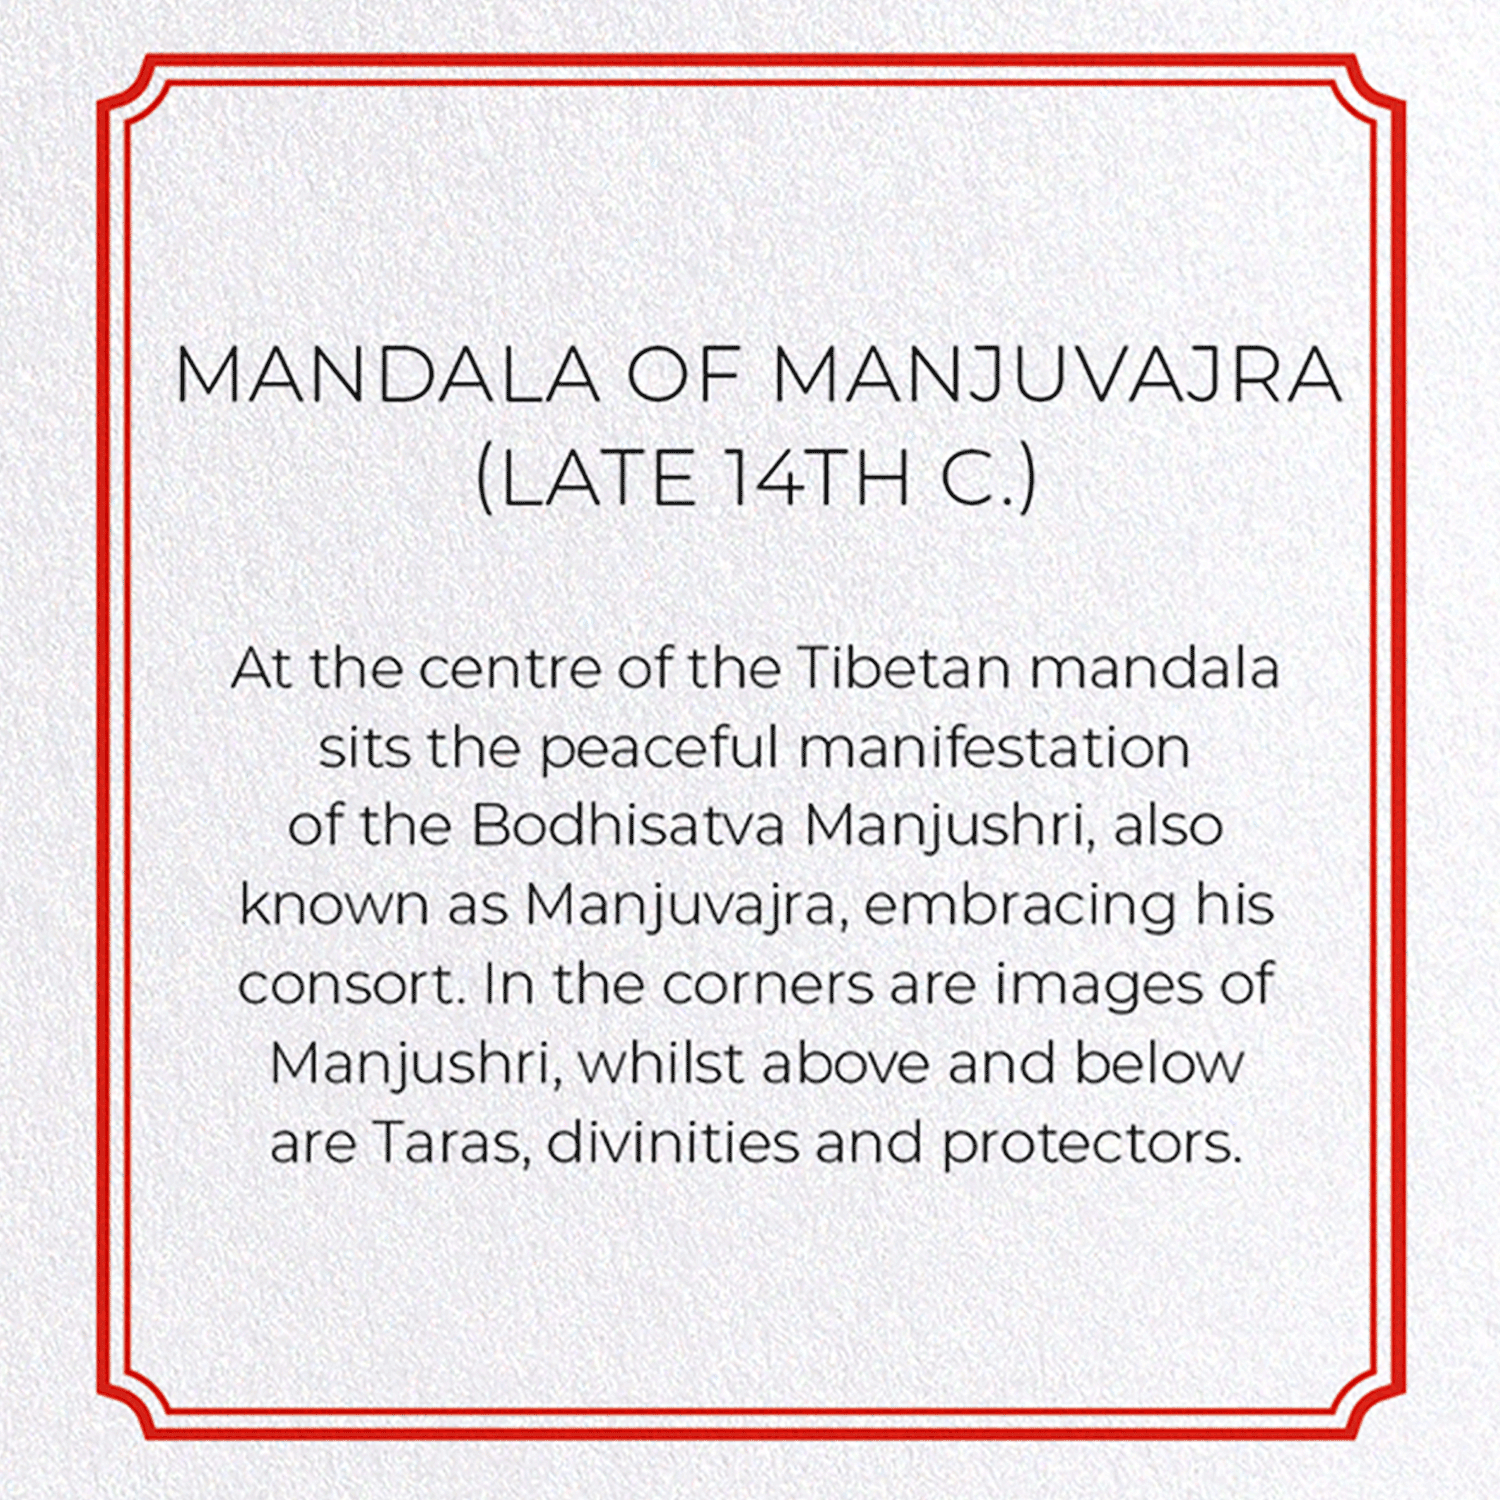 MANDALA OF MANJUVAJRA (LATE 14TH C.)